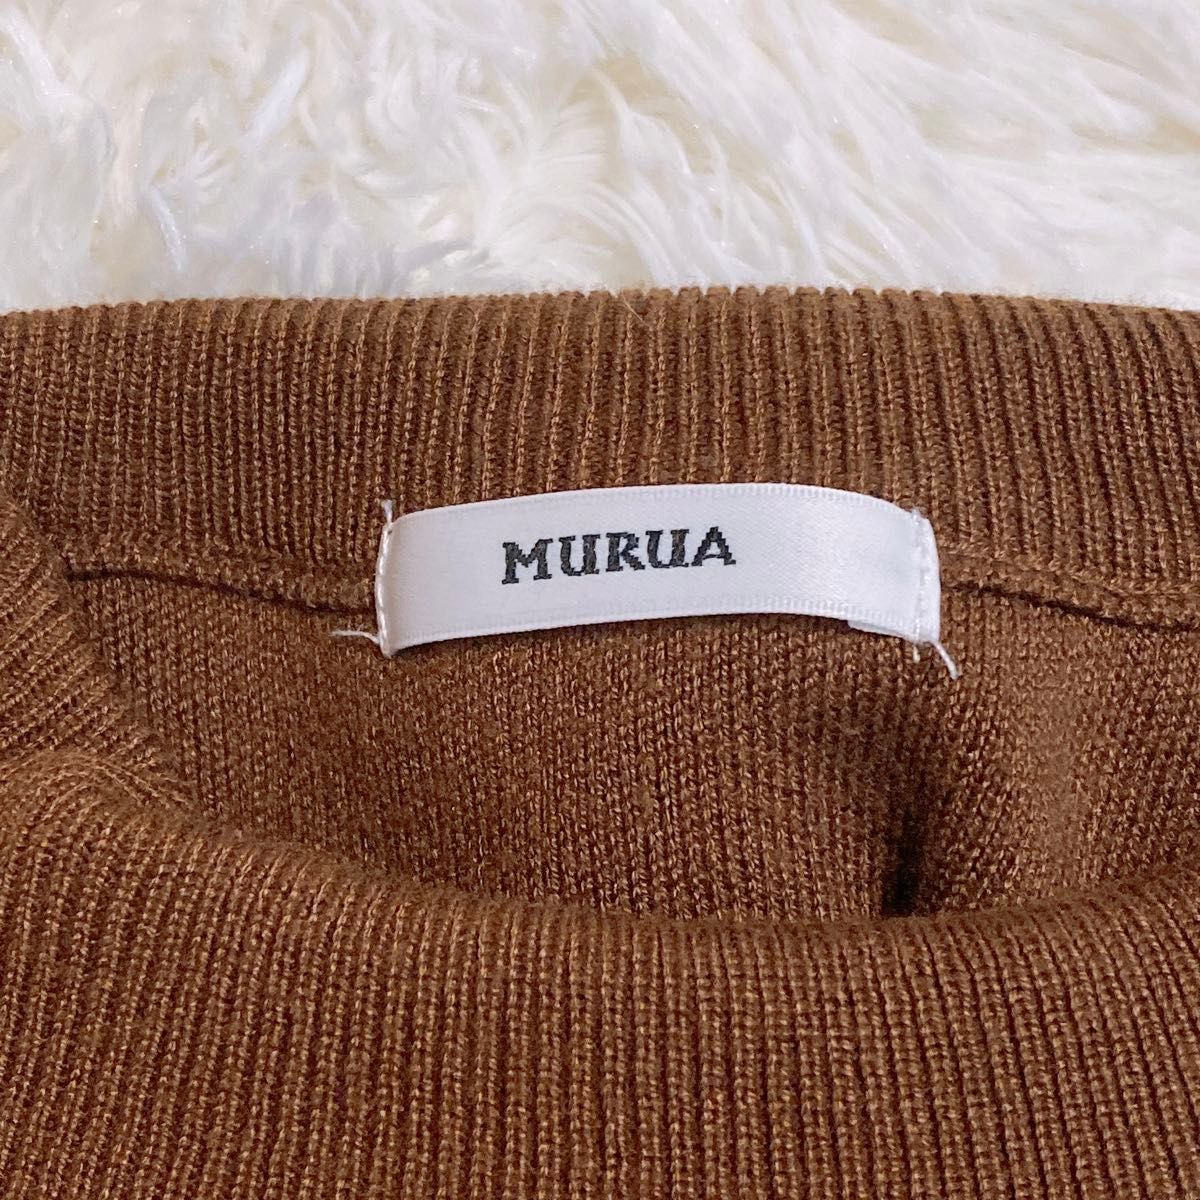 MURUA ムルーア ショルダーオープンパフニット トップス ブラウン セーター フリーサイズ 肩出し パフスリーブ